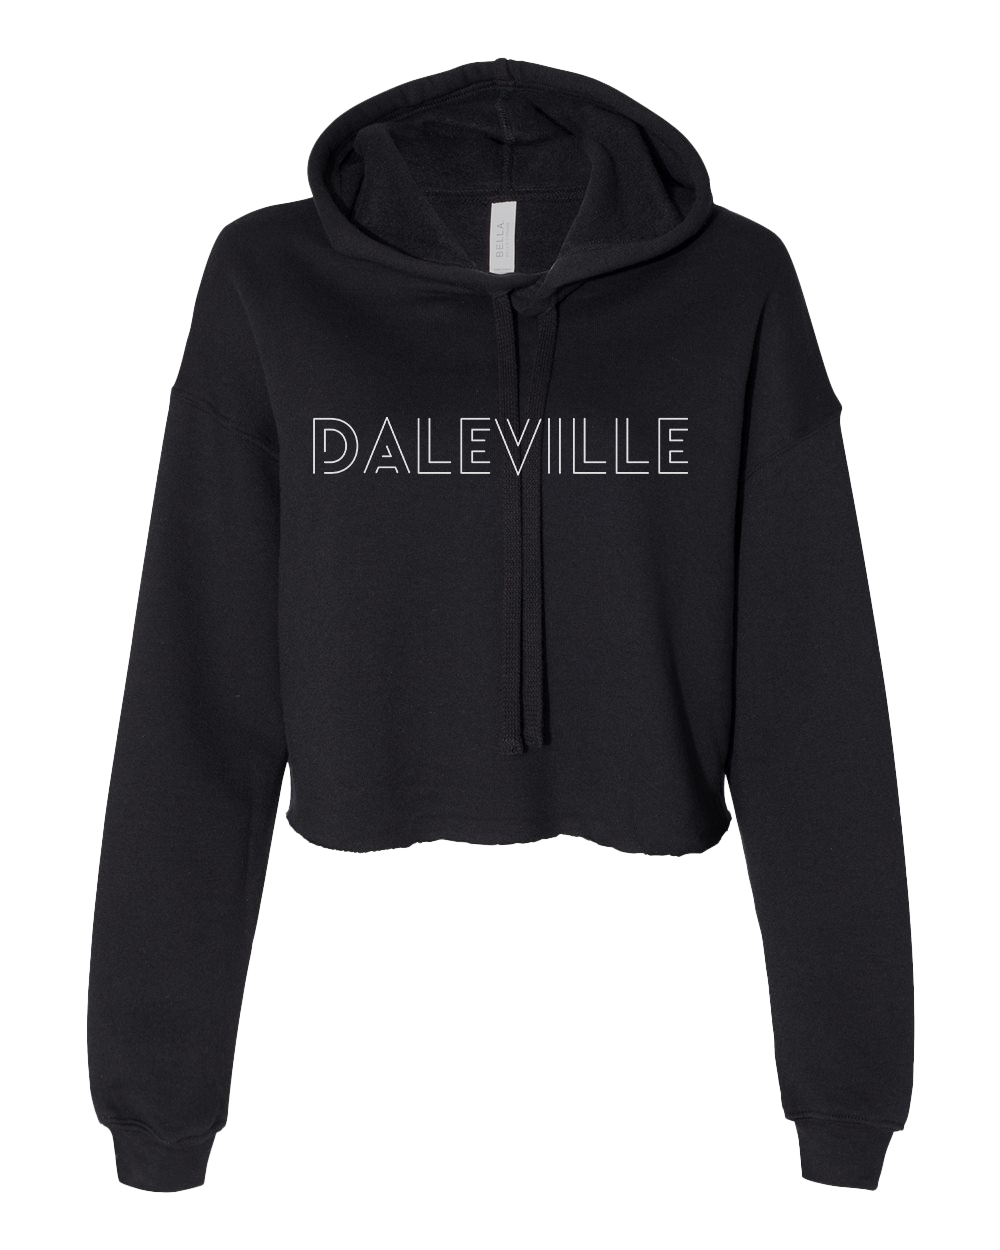 Daleville Broncos Cropped Hooded Sweatshirt - Black